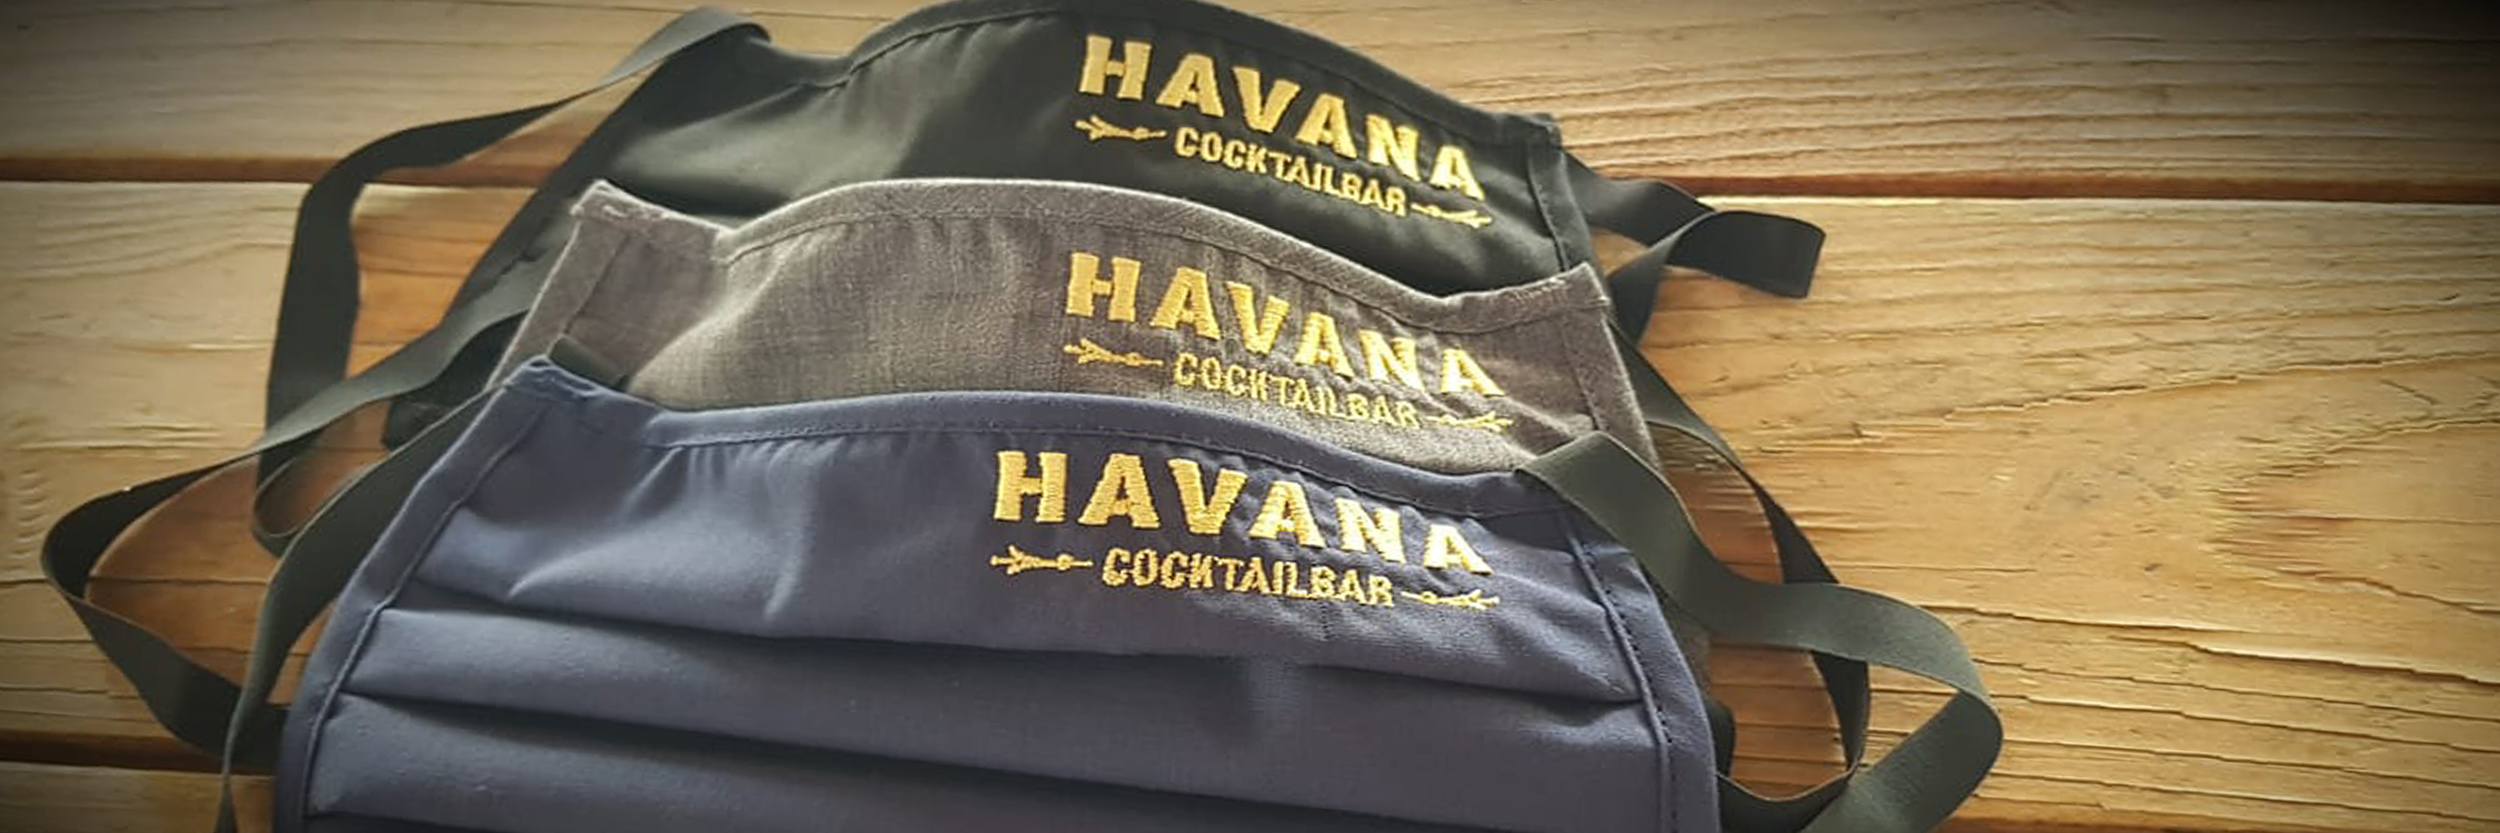 Gesichtsmasken mit Havana Cocktailbar Schrift